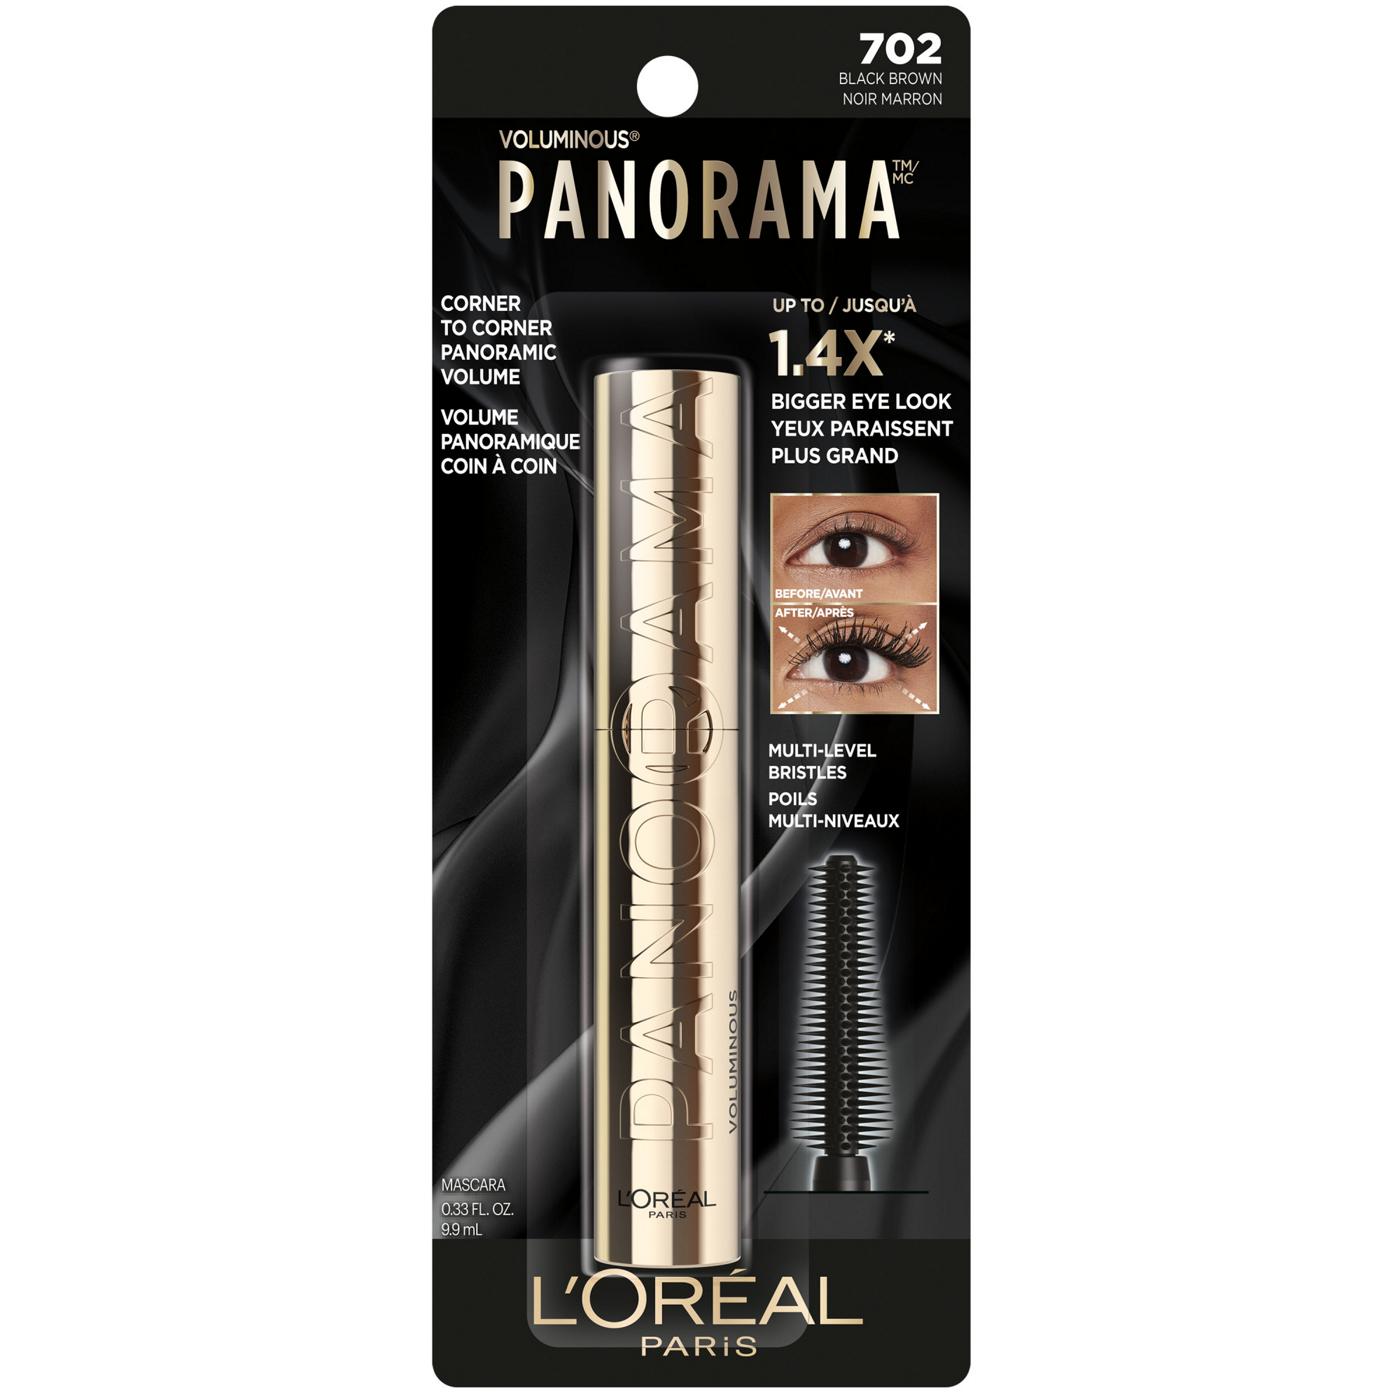 L'Oréal Paris Voluminous Panorama Mascara, Washable Black Brown; image 1 of 7